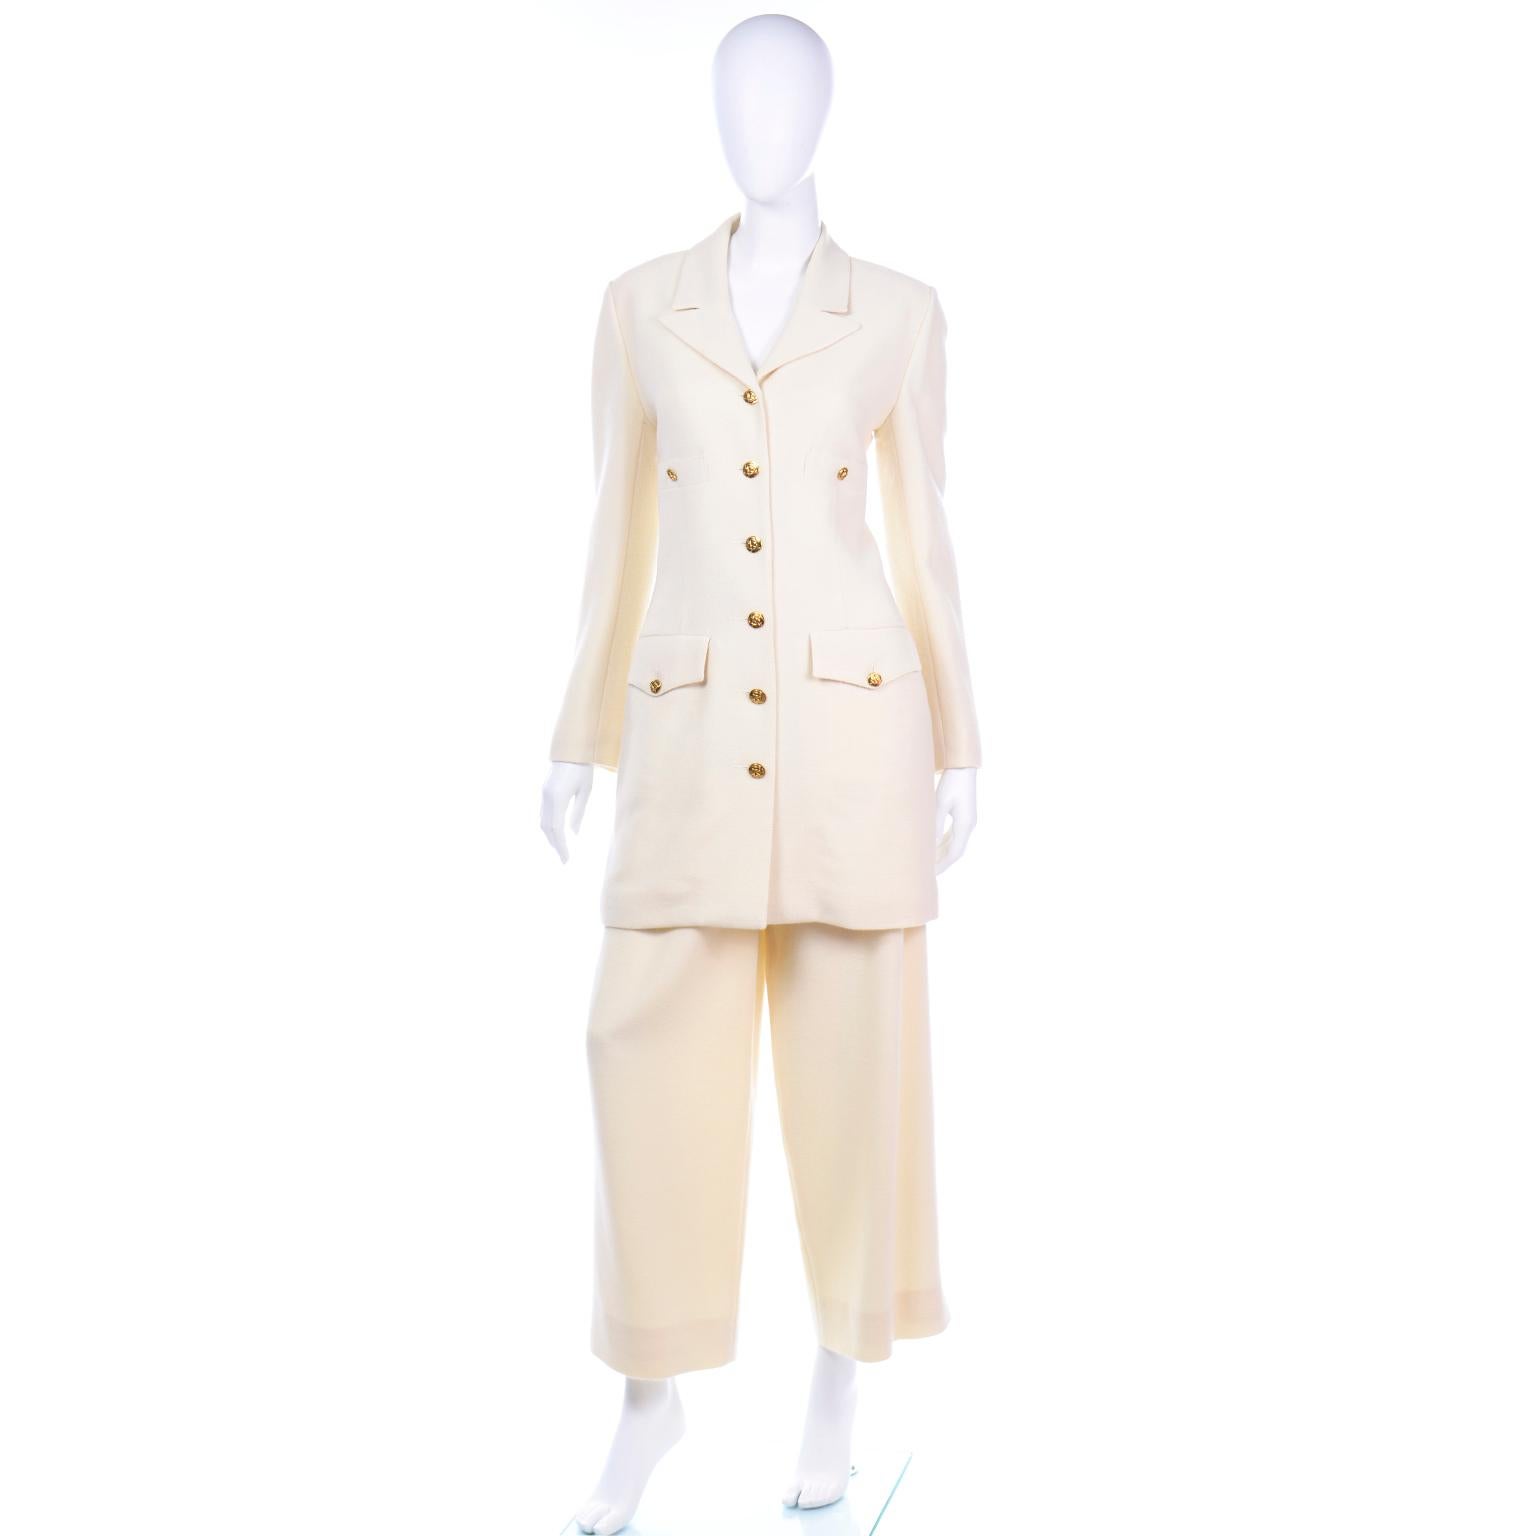 Dies ist ein wunderschöner elfenbeinfarbener, strukturierter Wollanzug von Sonia Rykiel mit einem langärmeligen Blazer und einer plissierten Hose mit weitem Bein. Die Longline-Jacke hat zwei funktionelle Brusttaschen mit Knopfverschluss und zwei